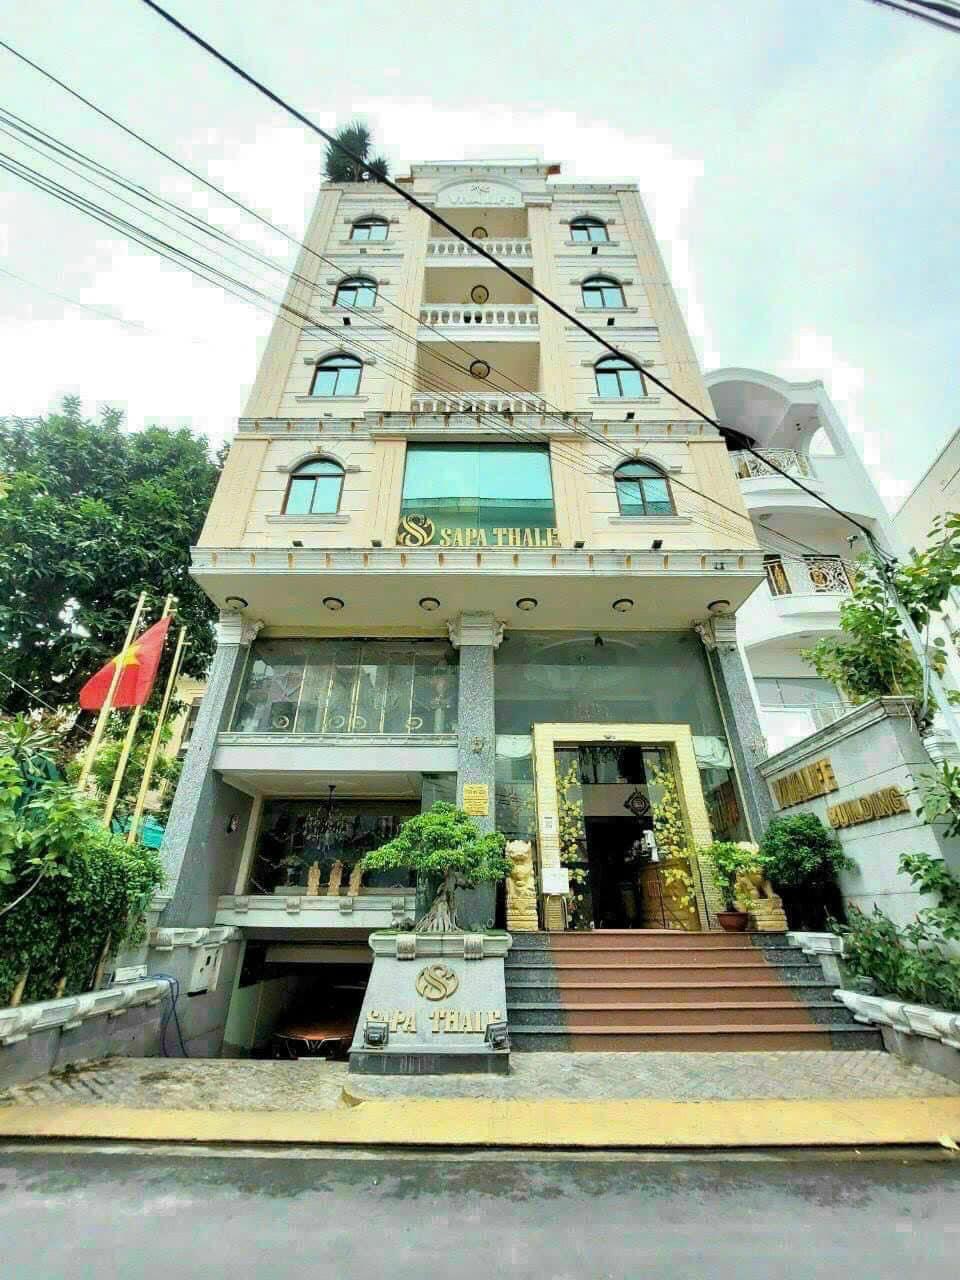 Siêu rẻ 👉 Bán gấp tòa nhà Nguyễn Trãi, Phường Nguyễn Cư Trinh, Quận 1. Giá 100 tỷ hạ còn 60 Tỷ.